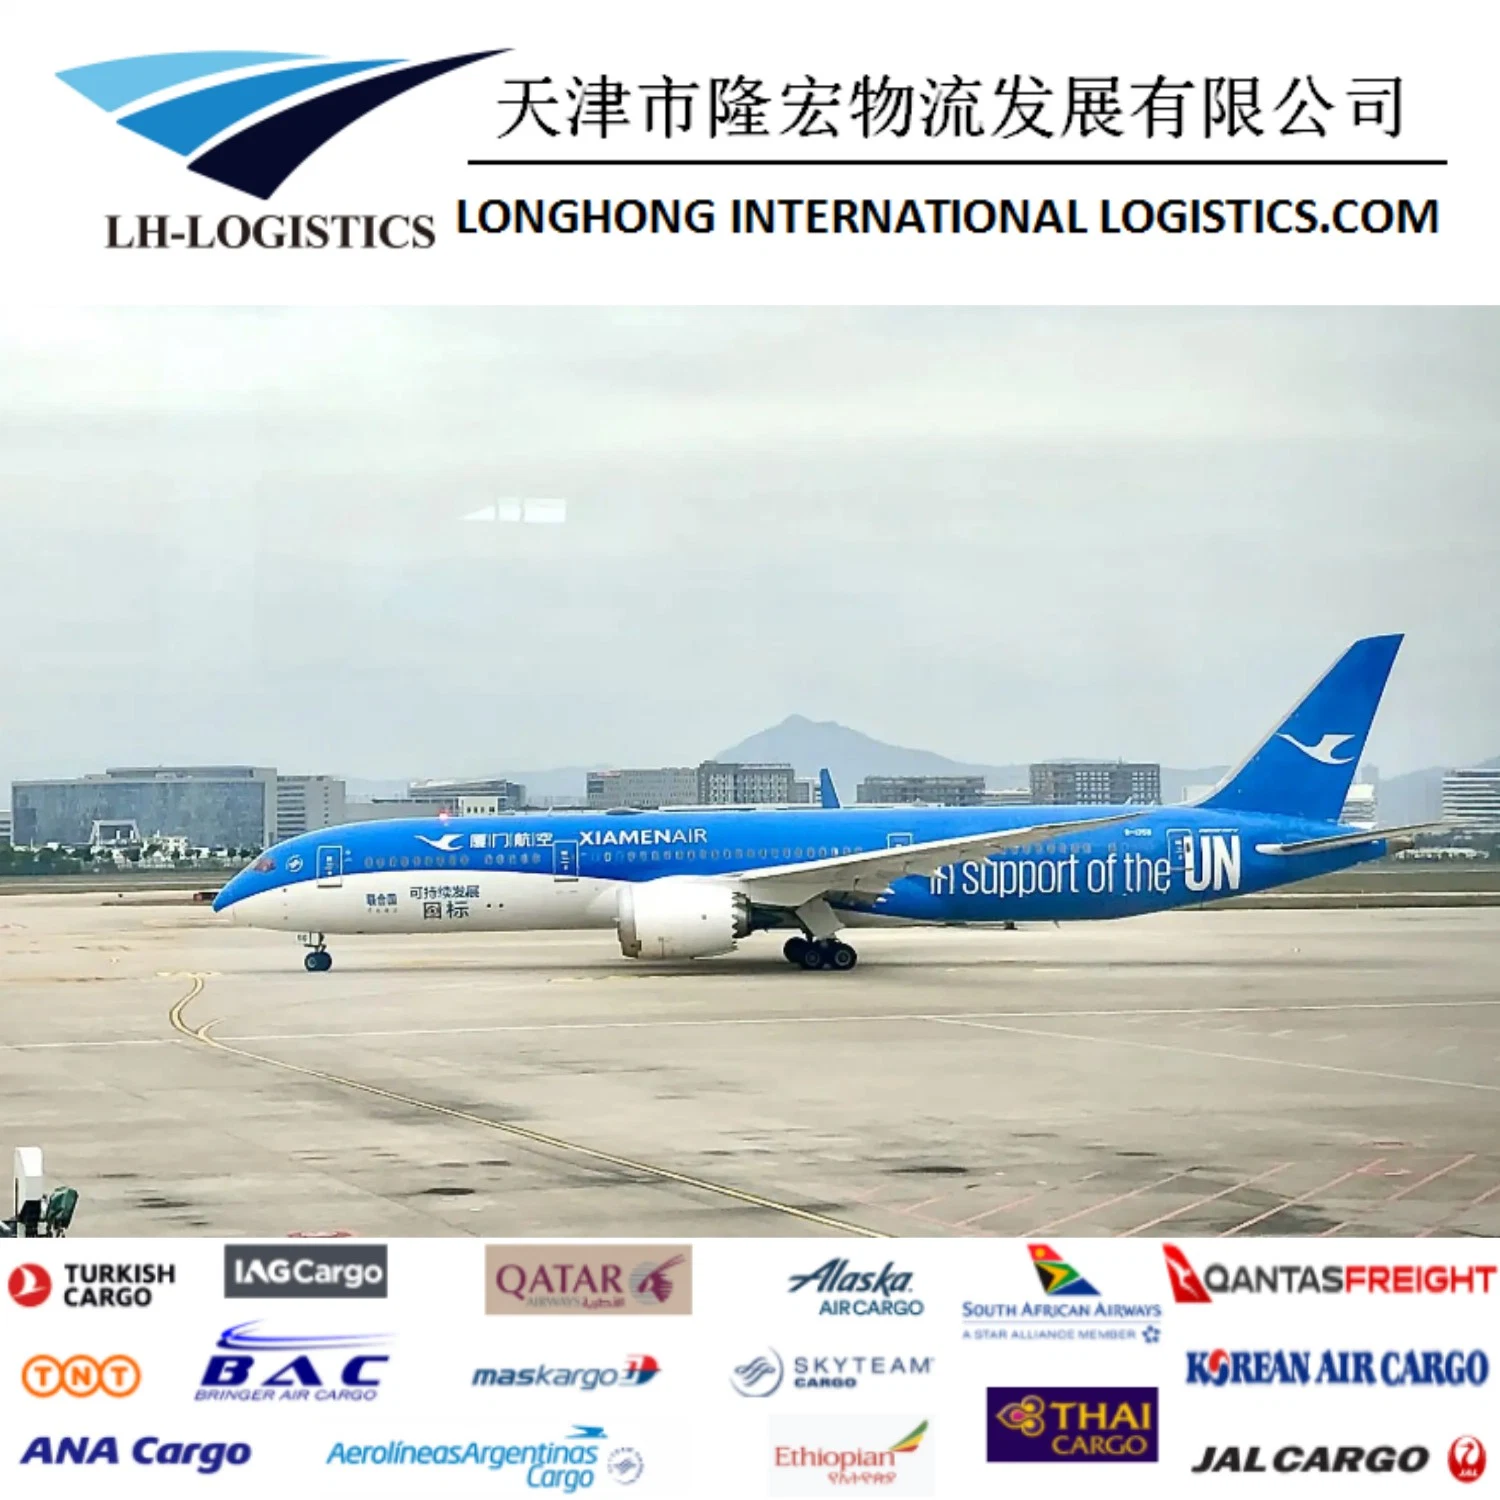 Envio aéreo/marítimo profissional de Alibava1688 da China para Nova Deli, Egipto, Los Angeles, Madrid e Londres